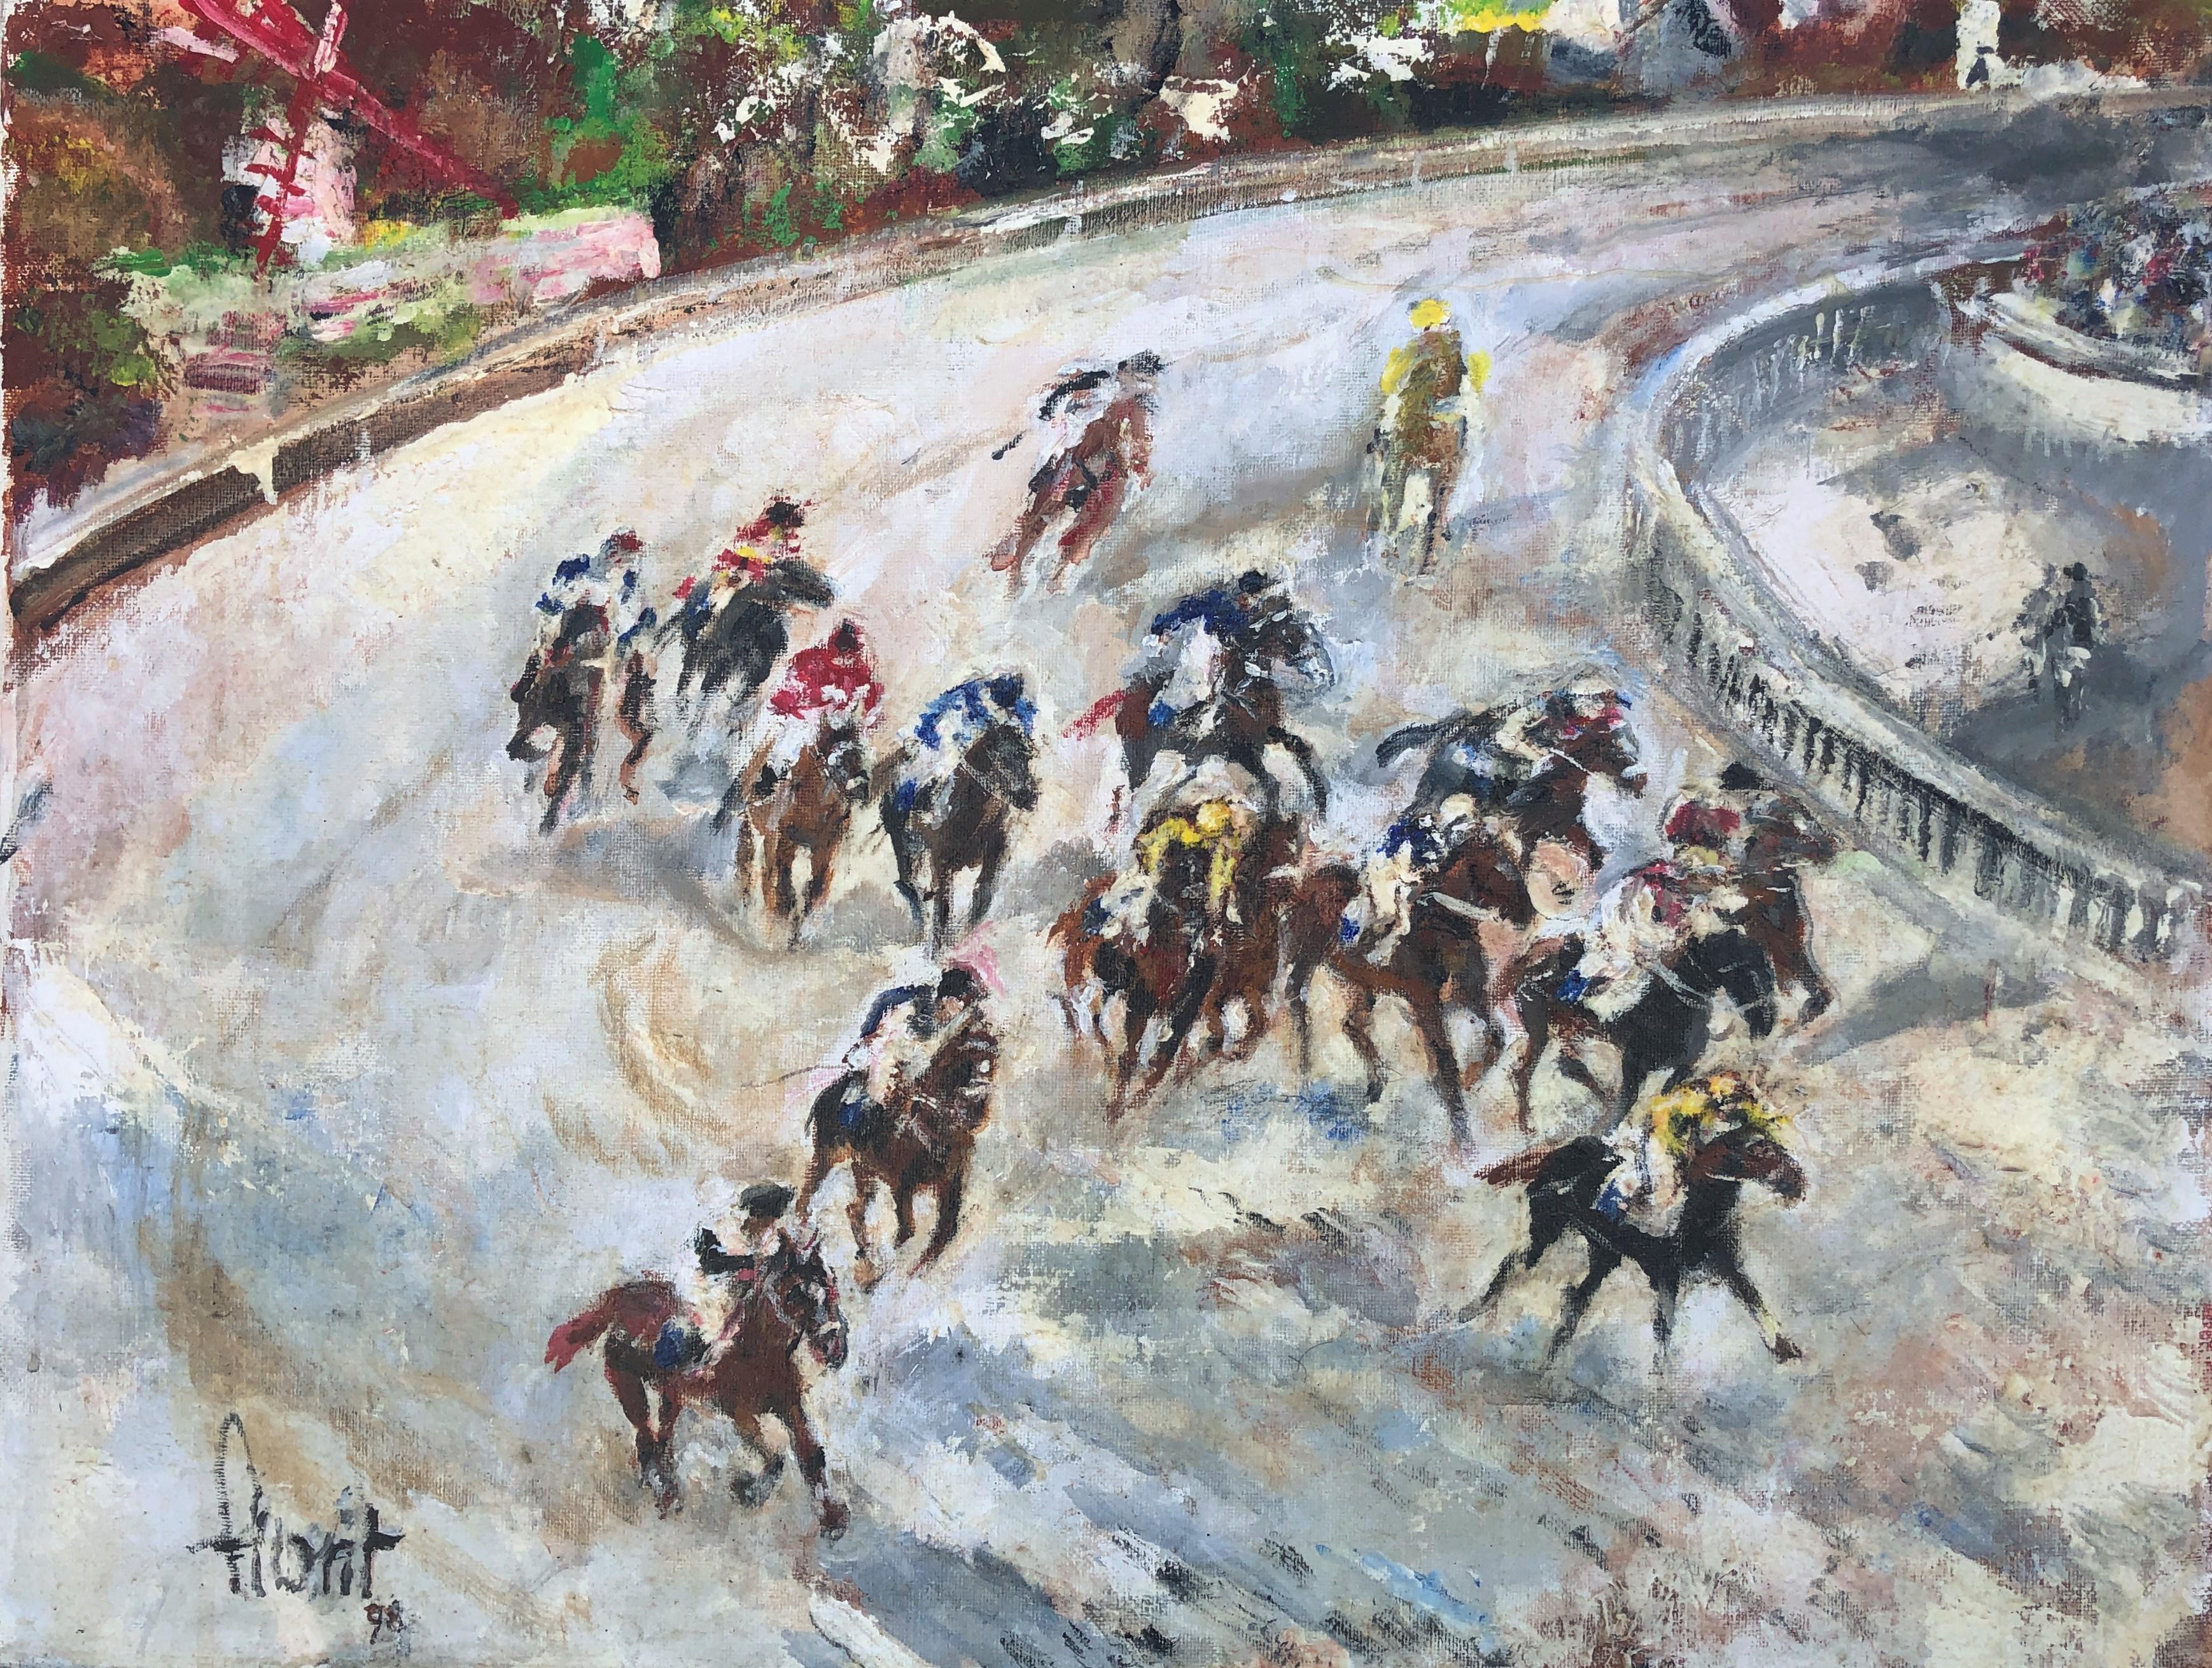 Animal Painting Jose Luis Florit Rodero - Peinture à l'huile sur toile d'une course de chevaux